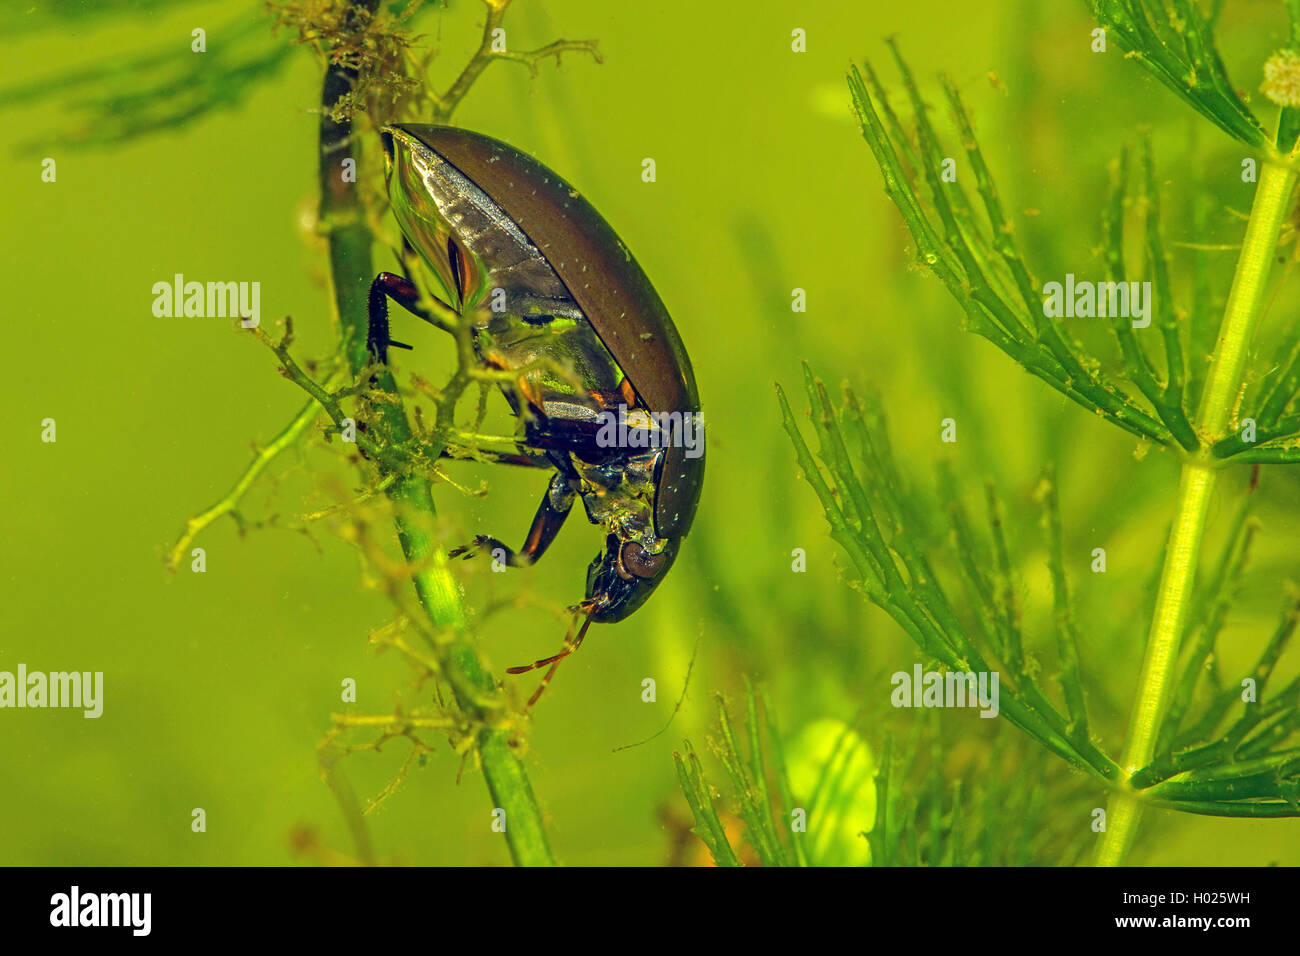 L'eau noire moindre coléoptère, moindre de l'eau d'argent, le moindre argent beetle (Hydrochara caraboides), assis à une usine de traitement de l'eau sous l'eau, de l'Allemagne Banque D'Images